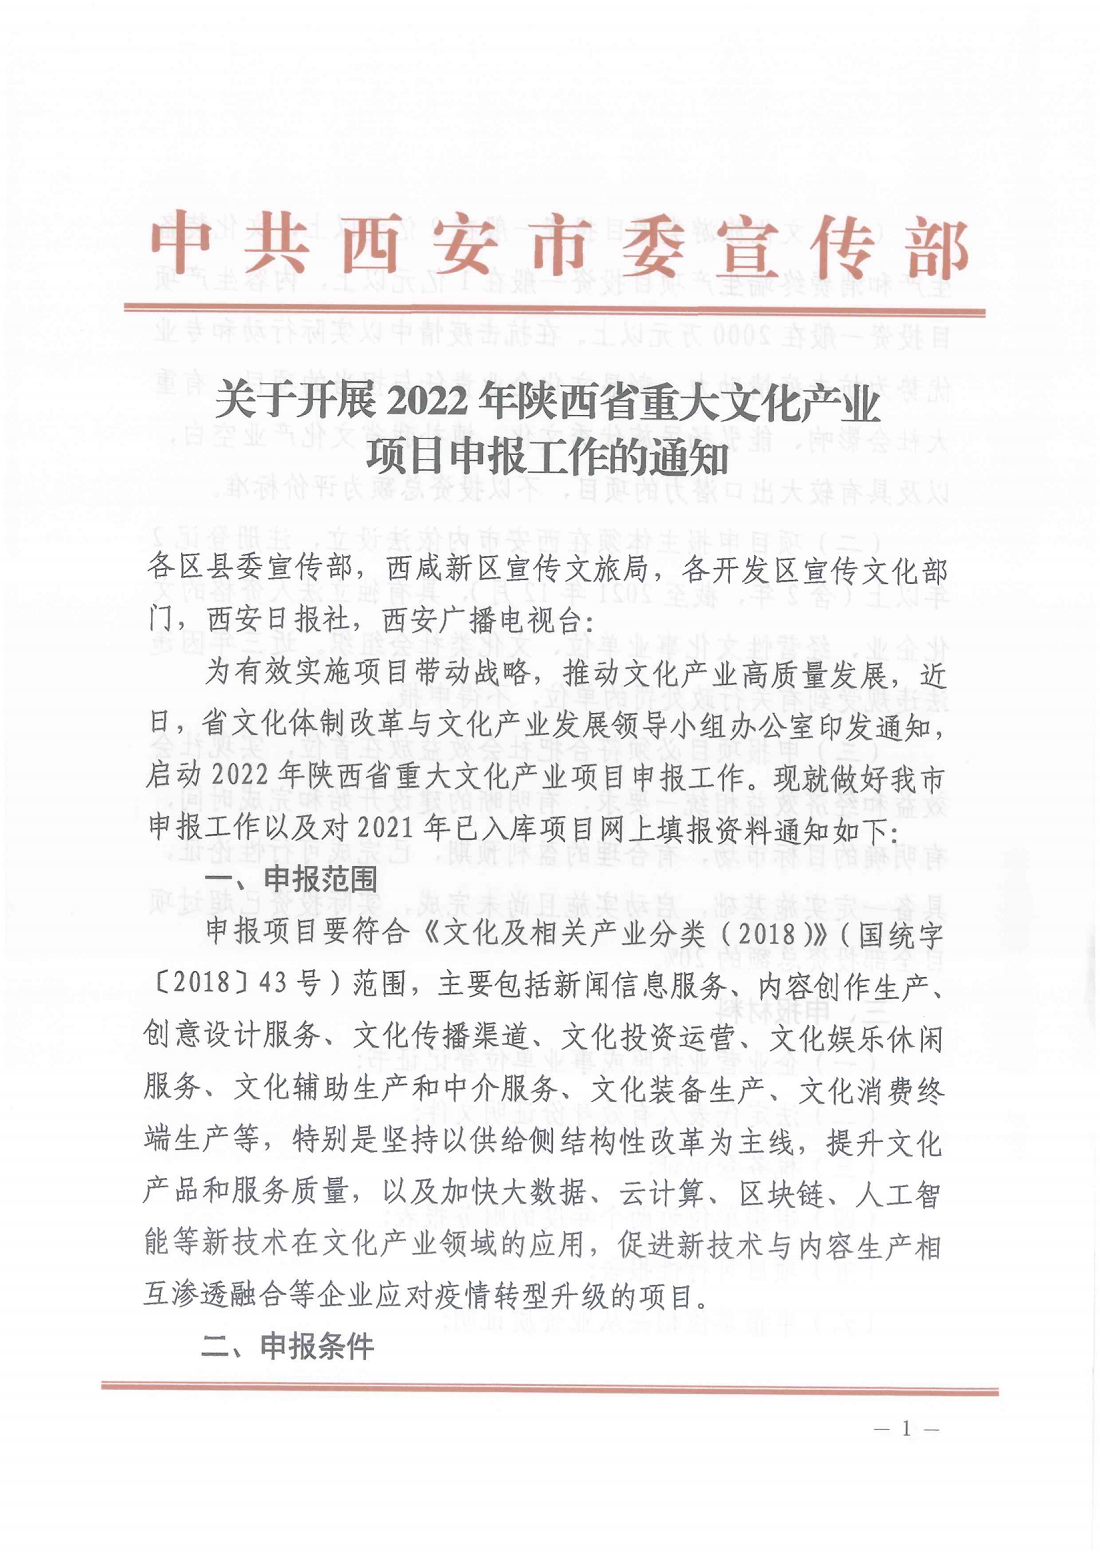 关于开展2022年陕西省重大文化产业项目申报工作的通知_00.png